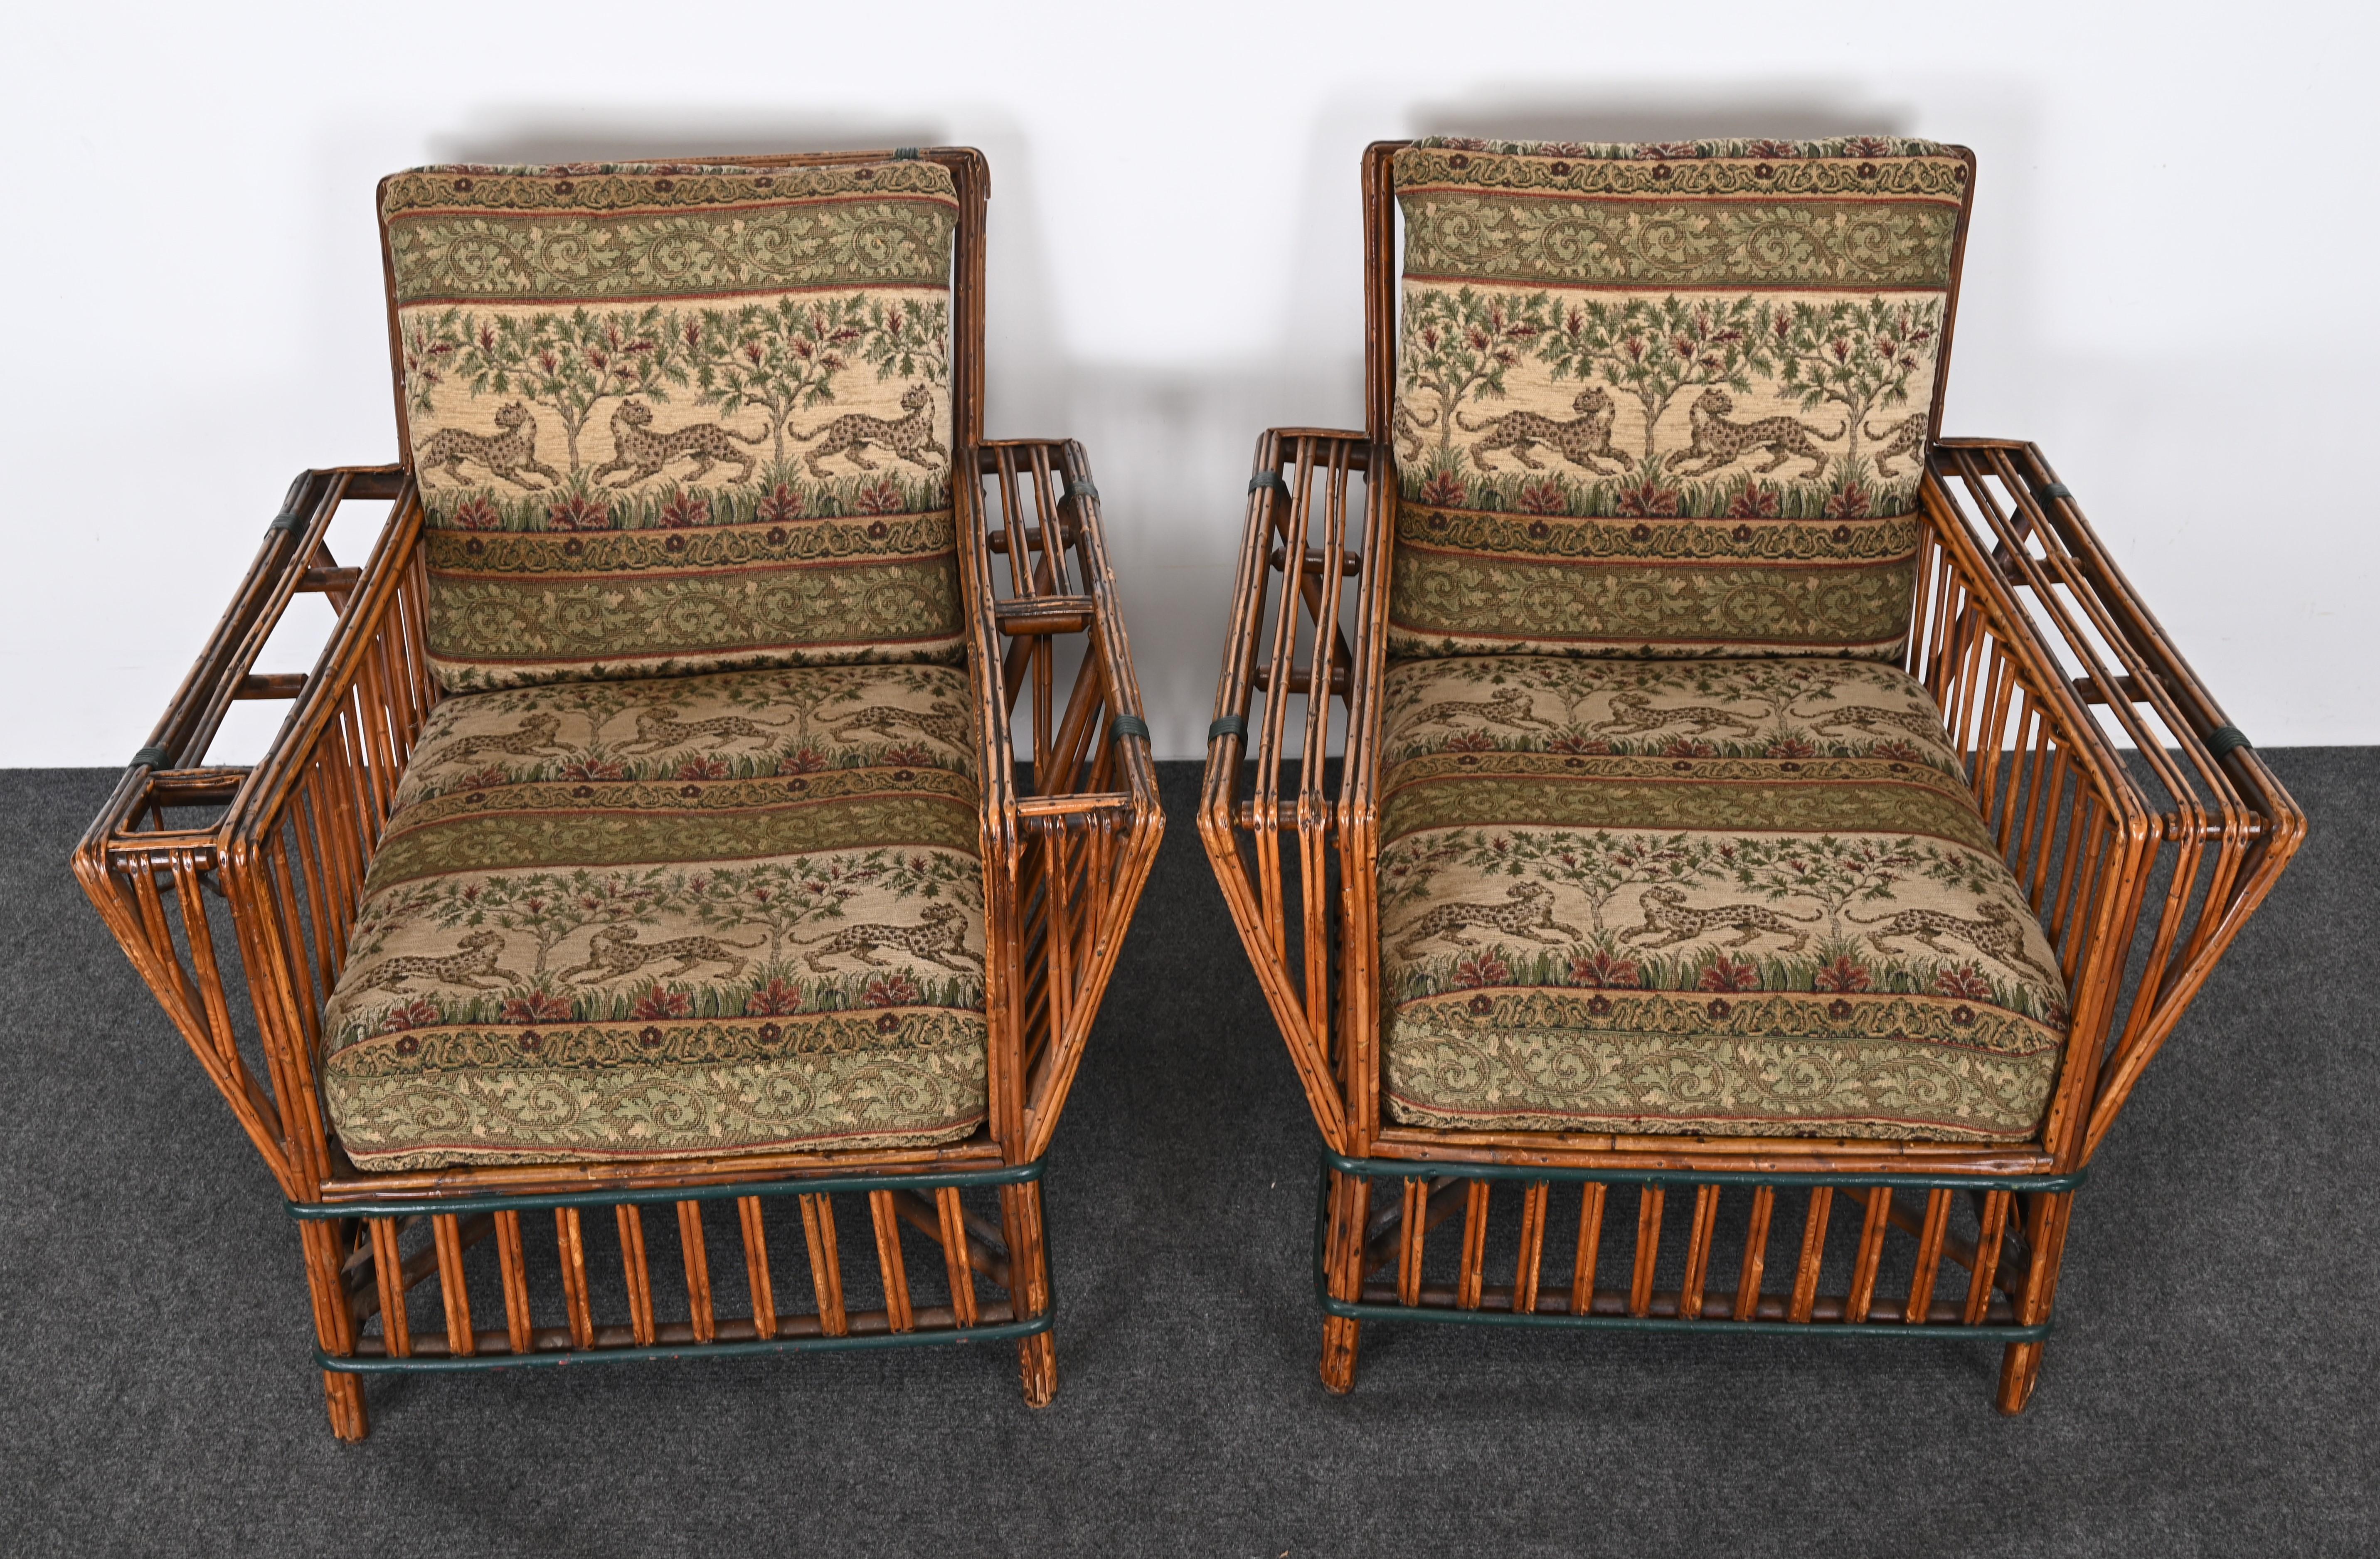 Art Deco geteilter Ypsilanti Stick Schilf Korbweide oder Sofa mit Paar Sessel, ca. 1930er Jahre (Mitte des 20. Jahrhunderts)